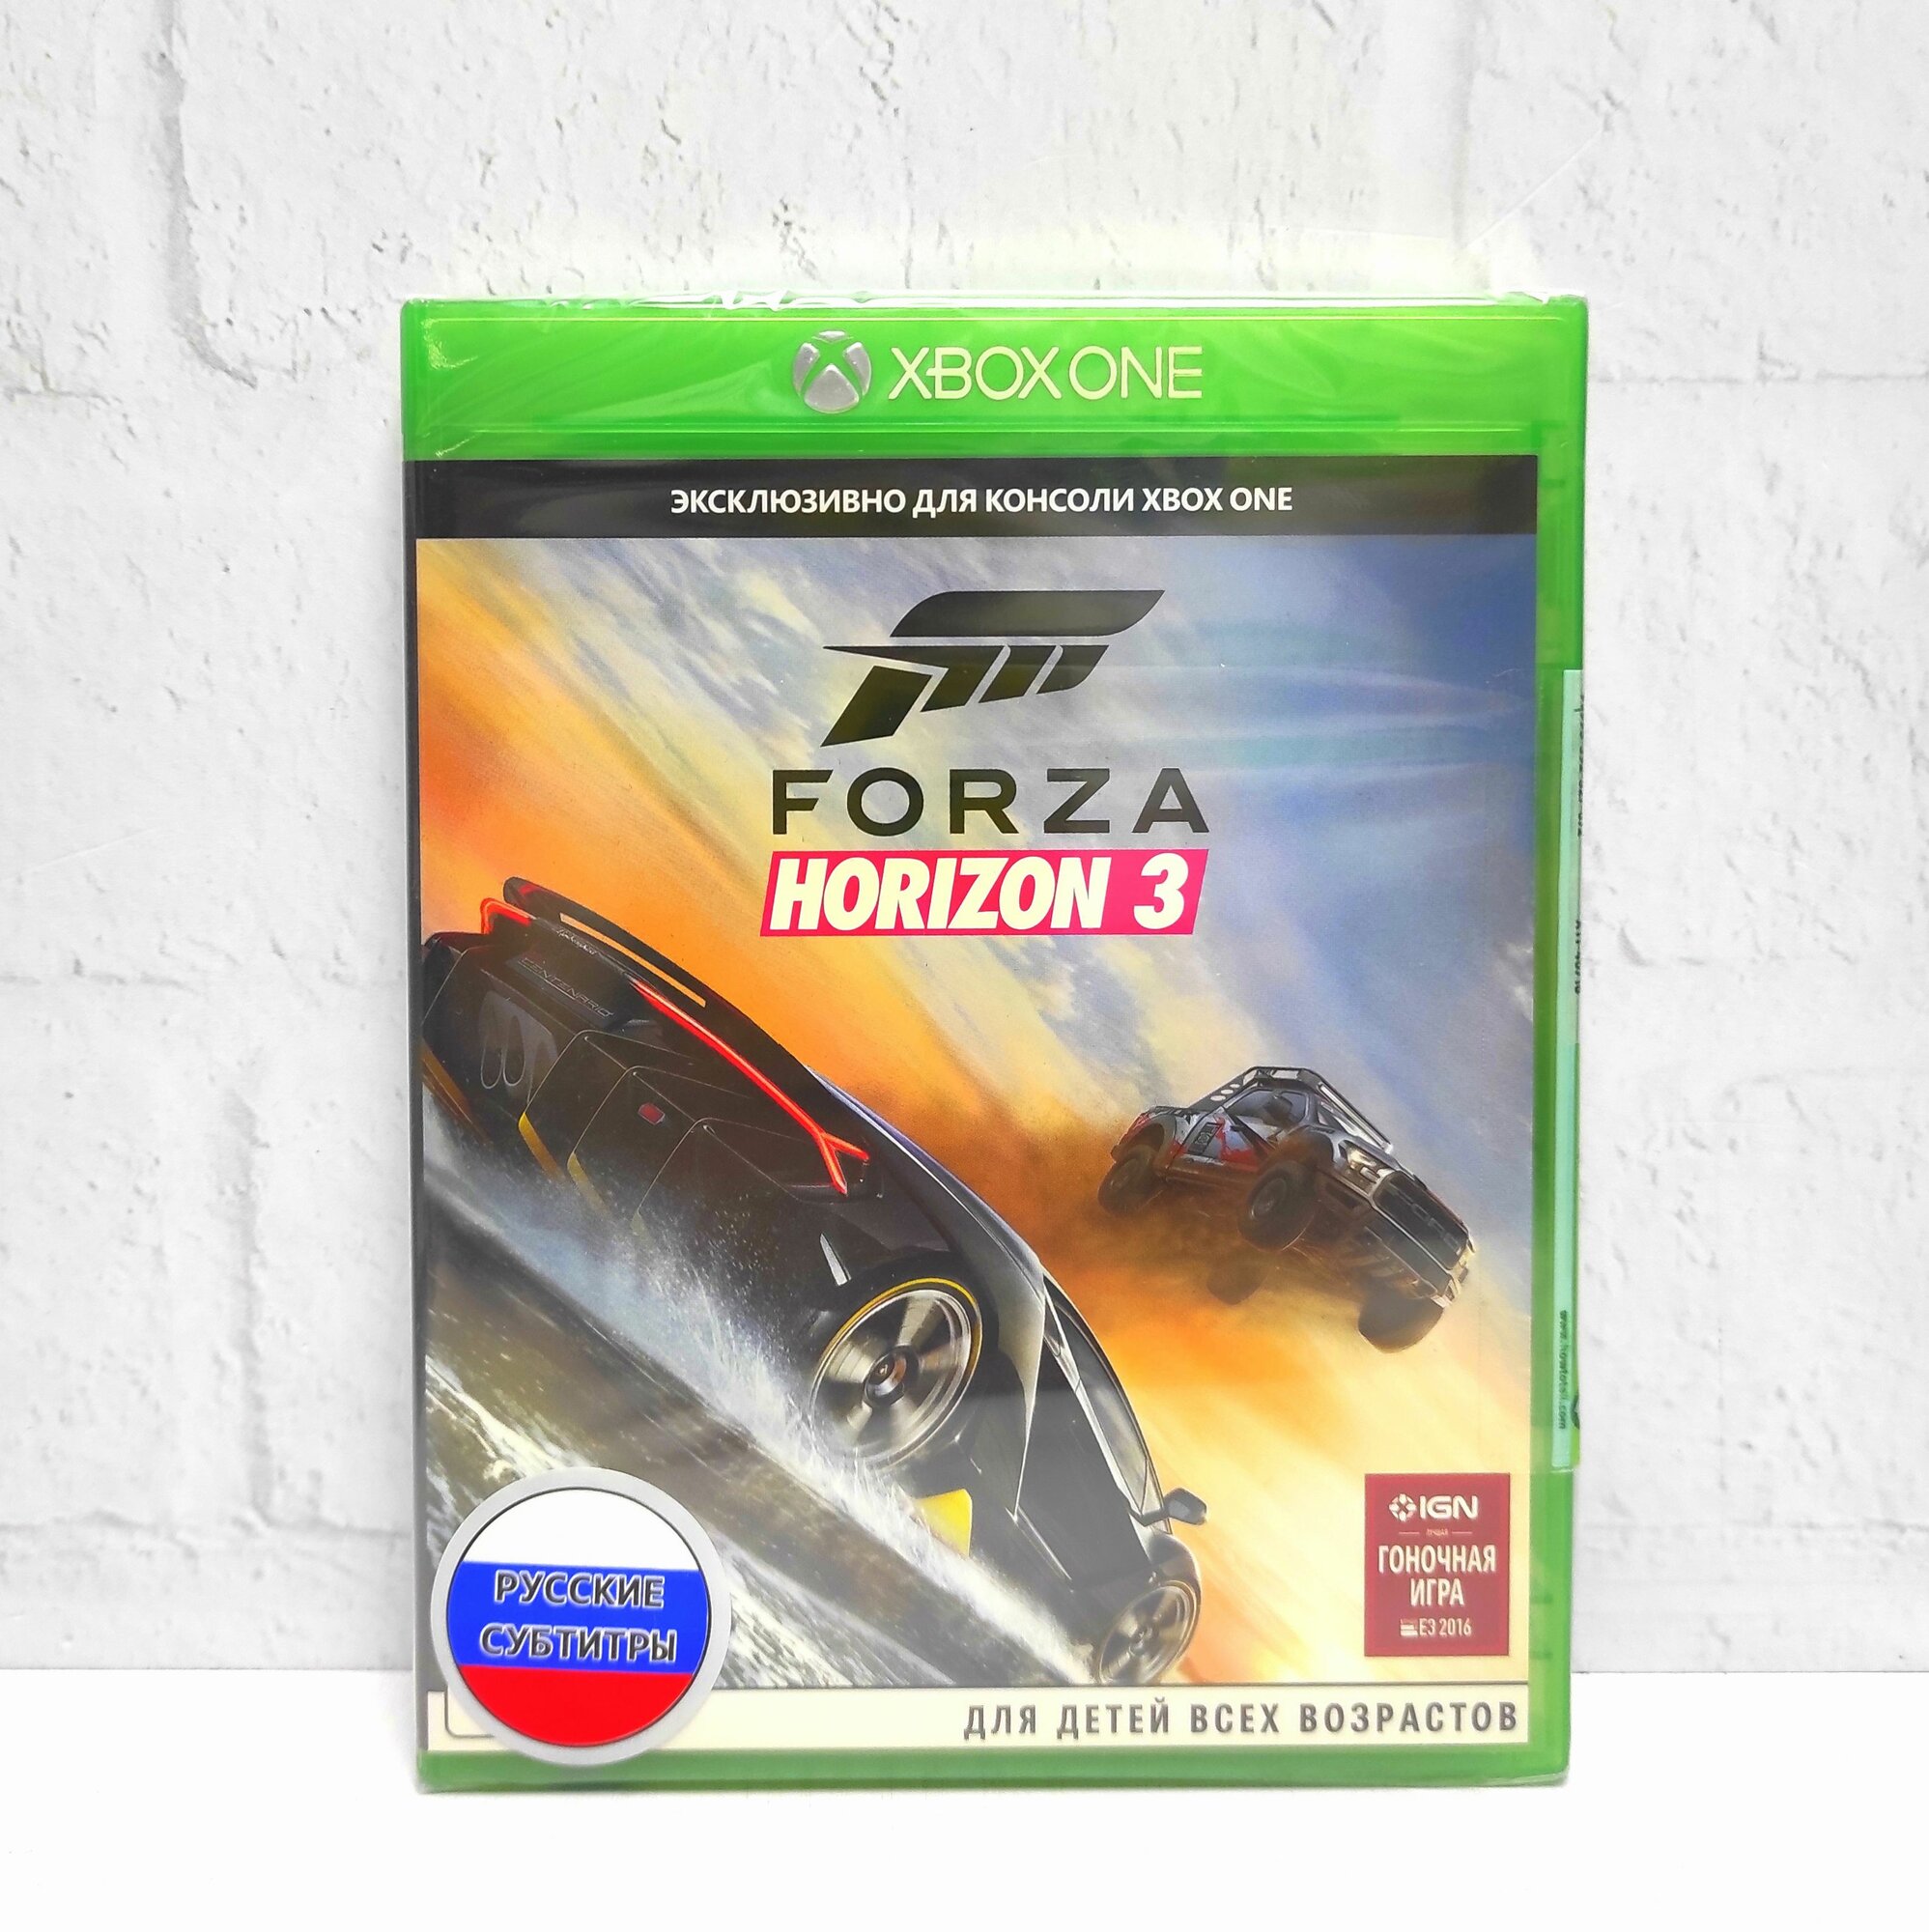 Forza Horizon 3 Русские субтитры Видеоигра на диске Xbox One / Series